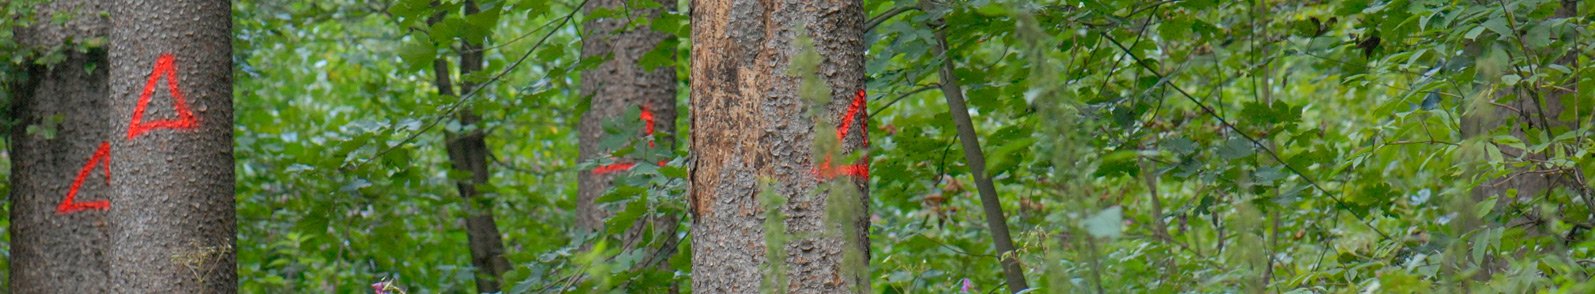 Nadelbäume mit abfallender Rinde und roten Markierungen 